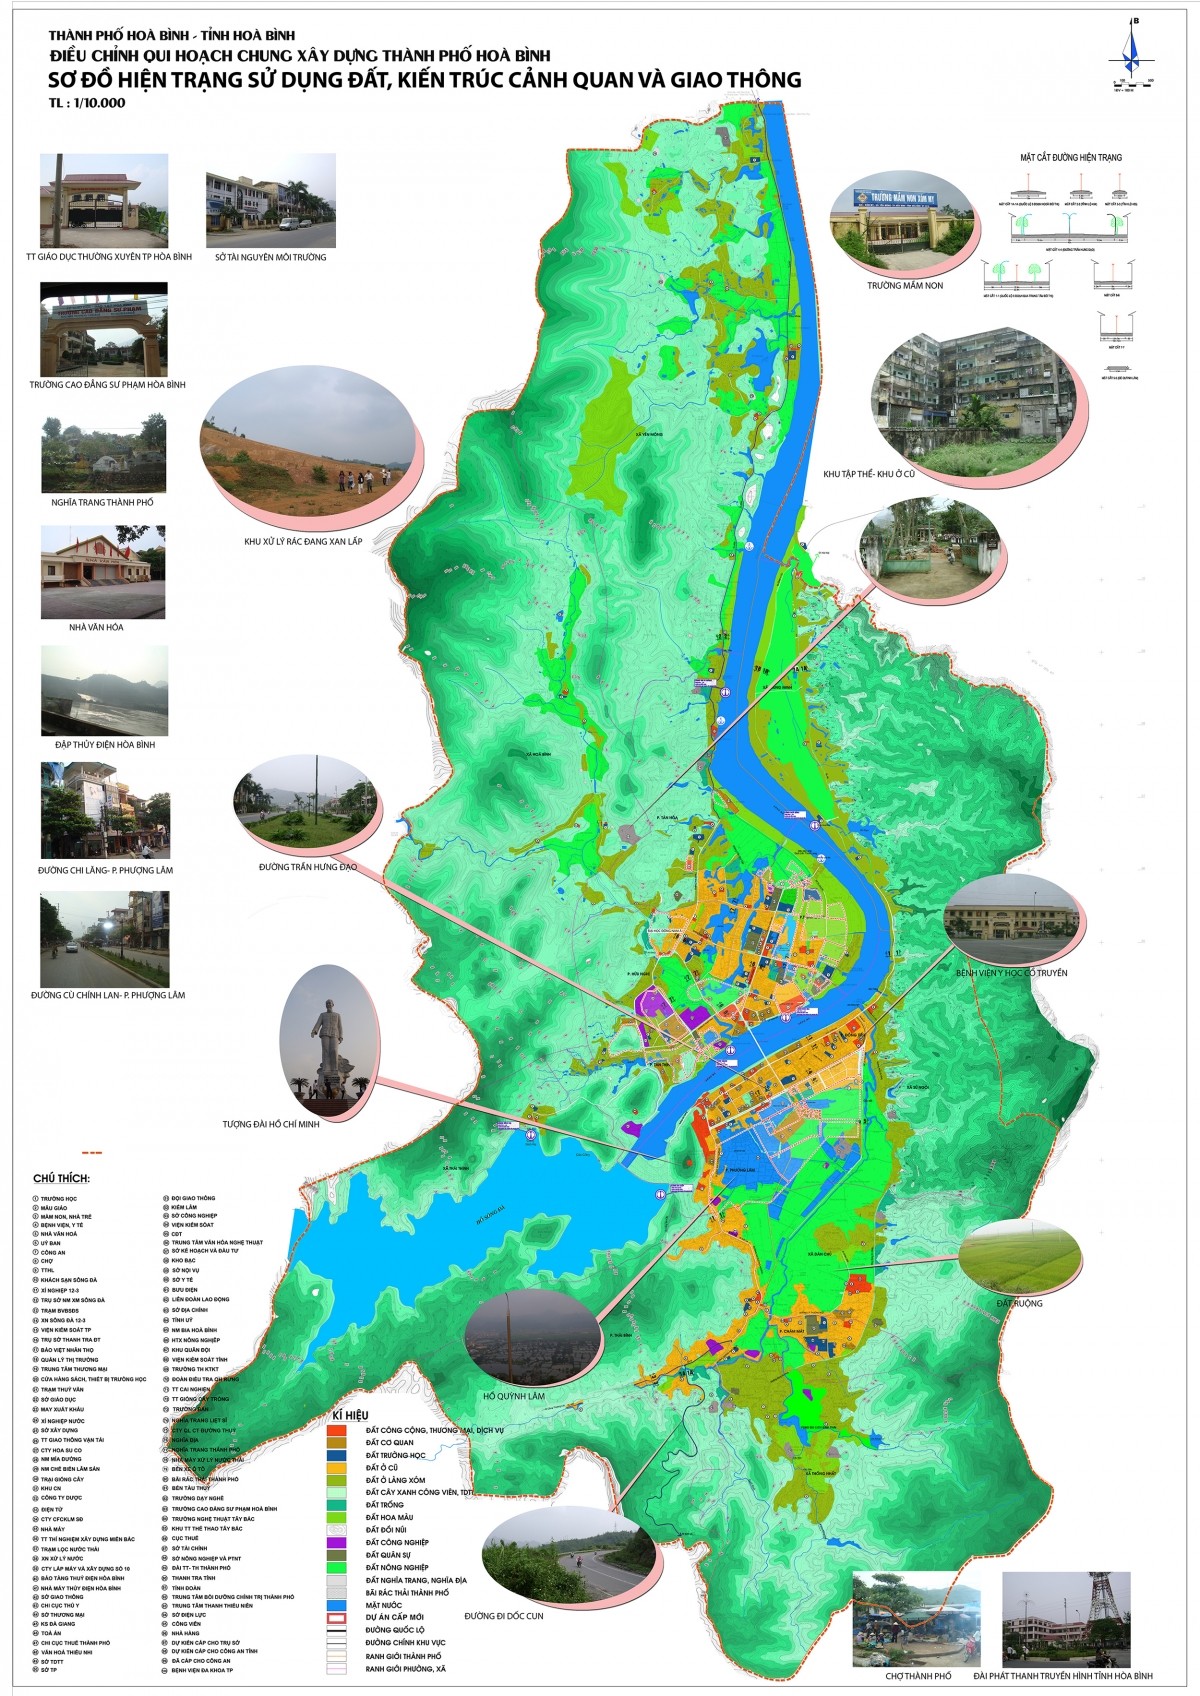 
Hình ảnh sơ đồ hiện trạng sử dụng đất, kiến trúc cảnh quan và giao thông
